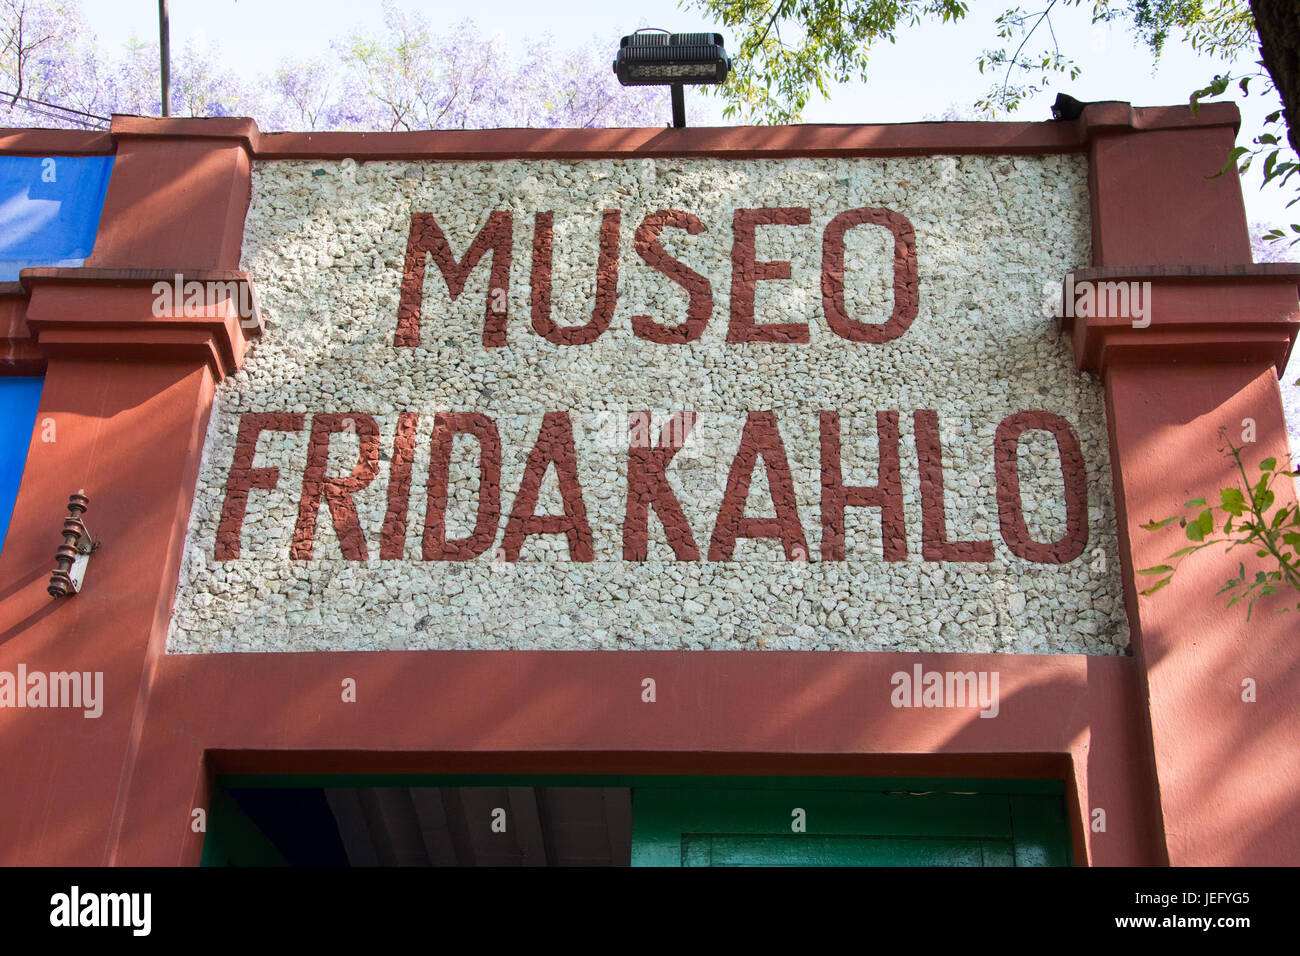 Museo Frida Kahlo, Mexico City, Mexico Stock Photo